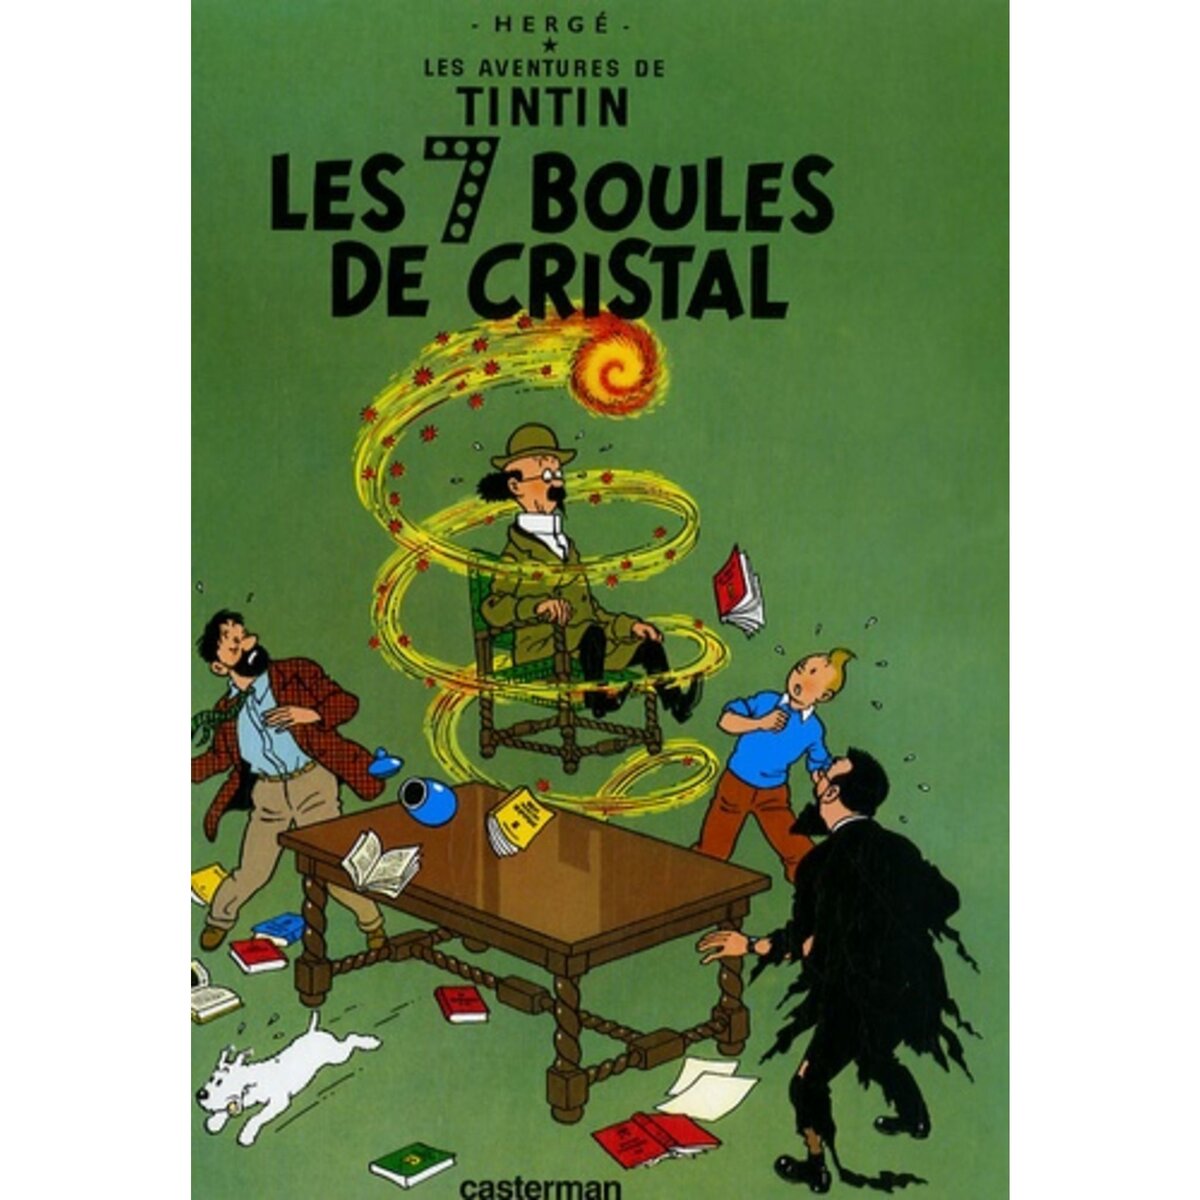  LES AVENTURES DE TINTIN TOME 13 : LES 7 BOULES DE CRISTAL. MINI-ALBUM, Hergé